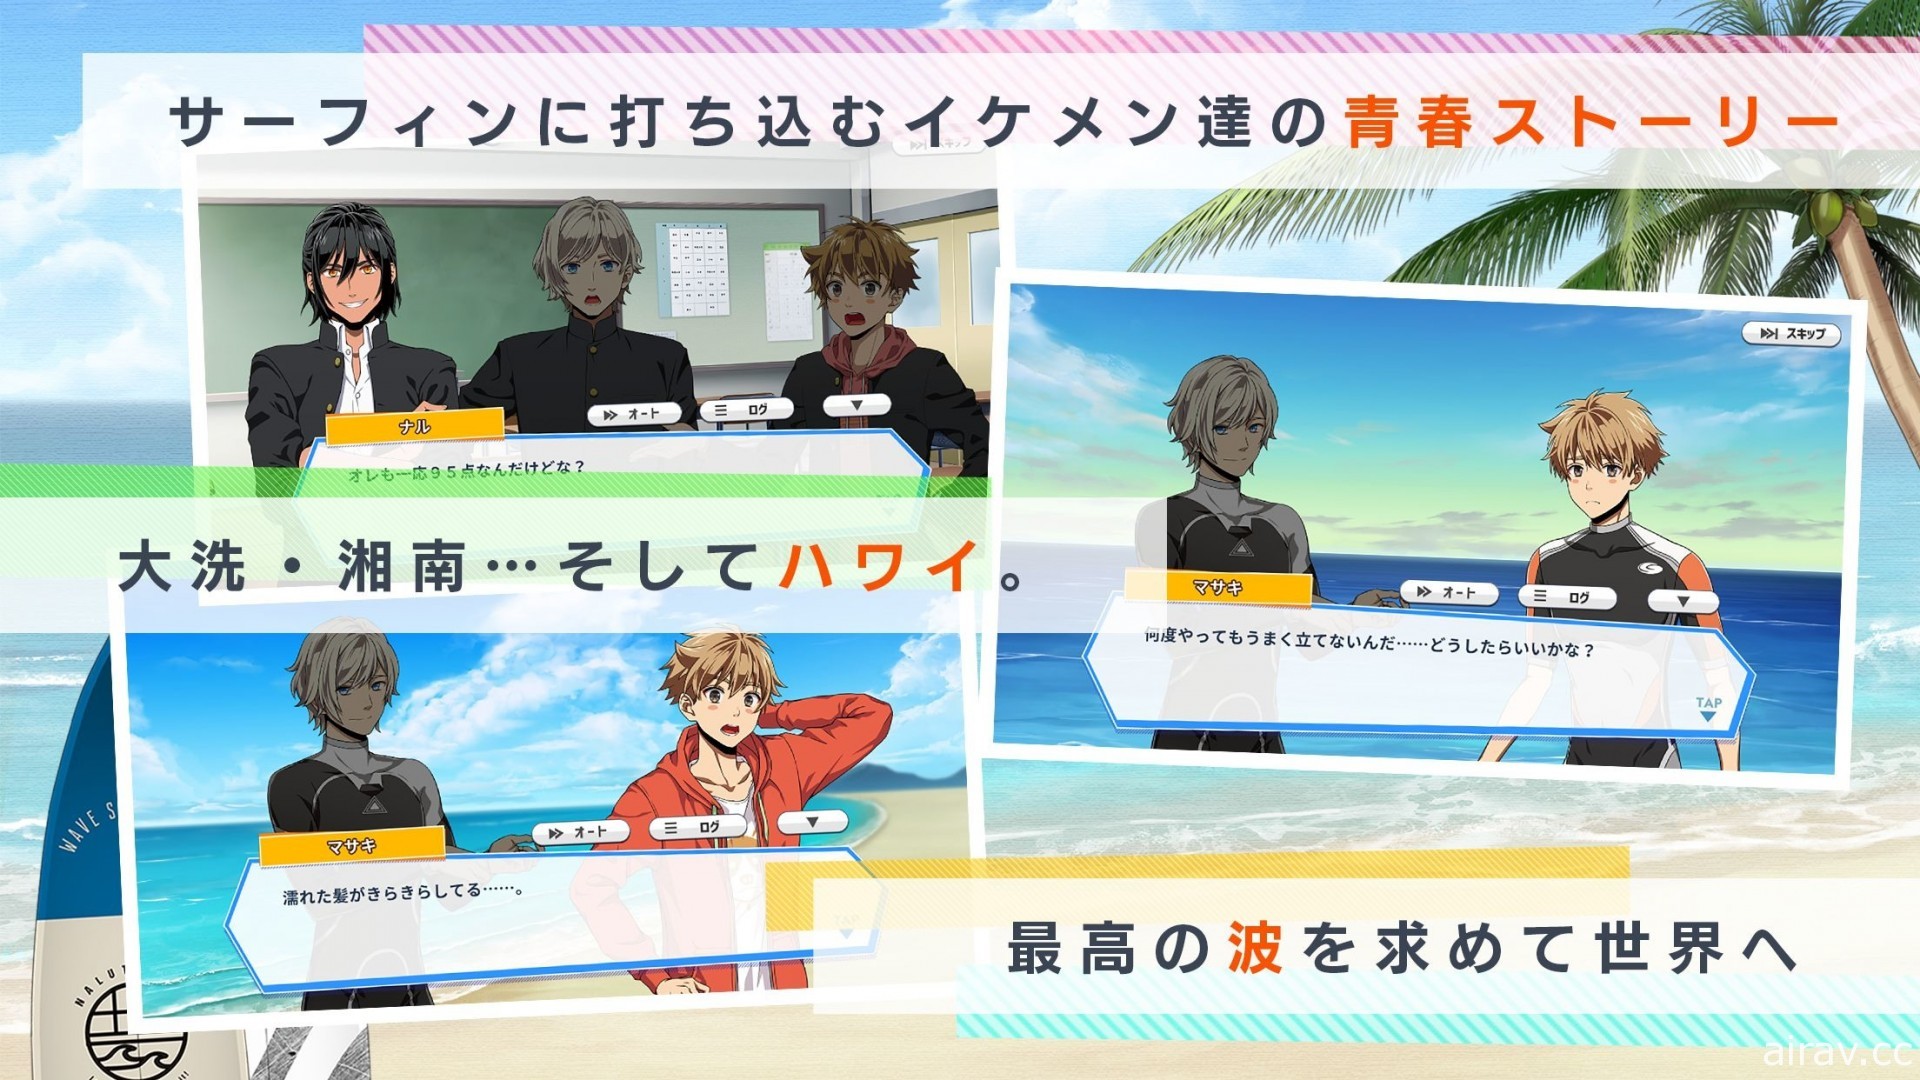 冲浪题材养成游戏《WAVE!!～冲浪男孩～》于日本推出 体验与动画不同的原创故事